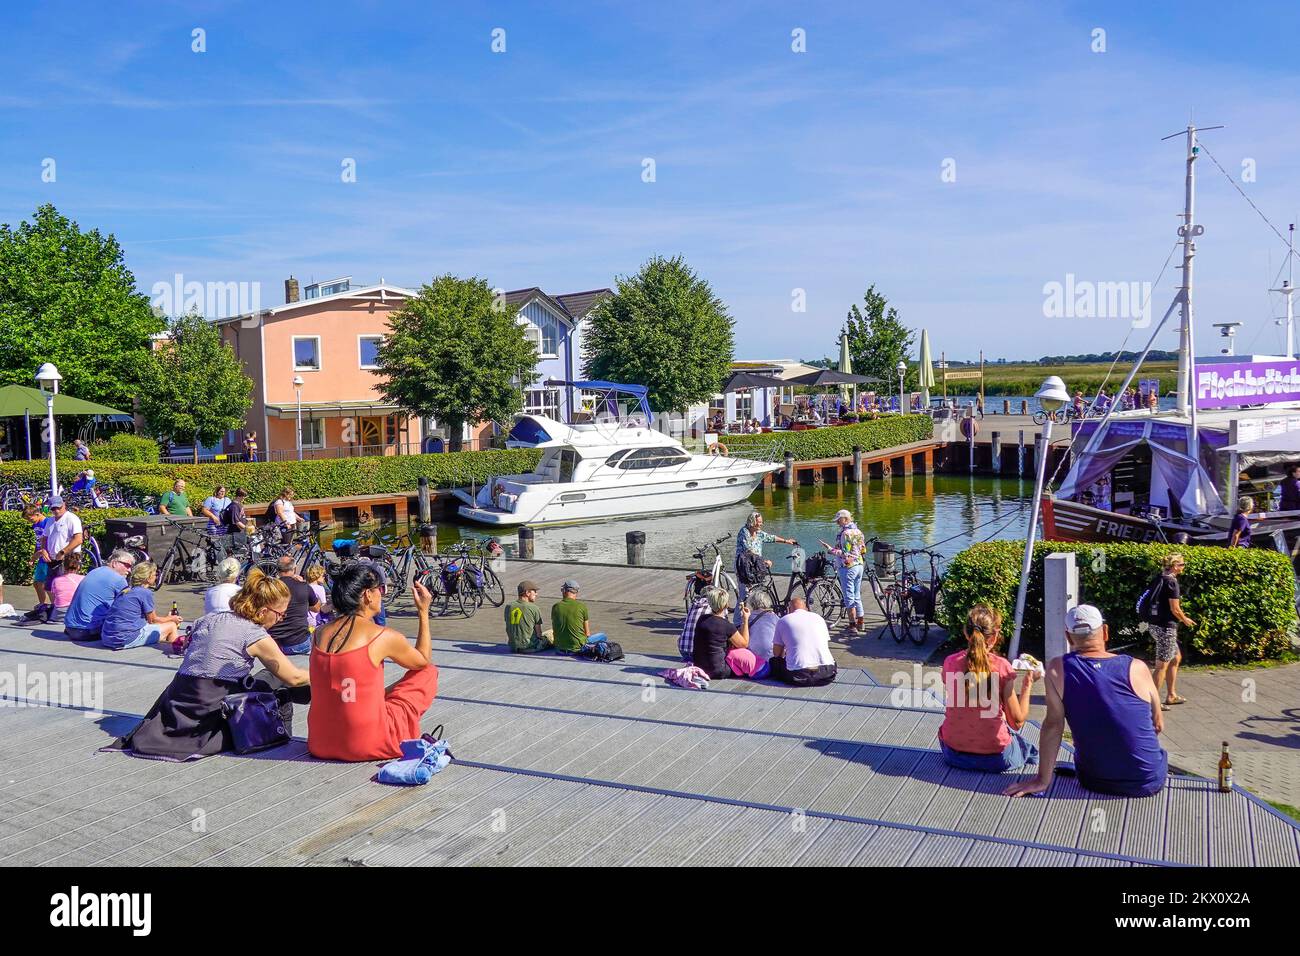 Urlauber, Promenade, Hafen, Zingst, Darß, Mecklenburg-Vorpommern, Deutschland Stock Photo